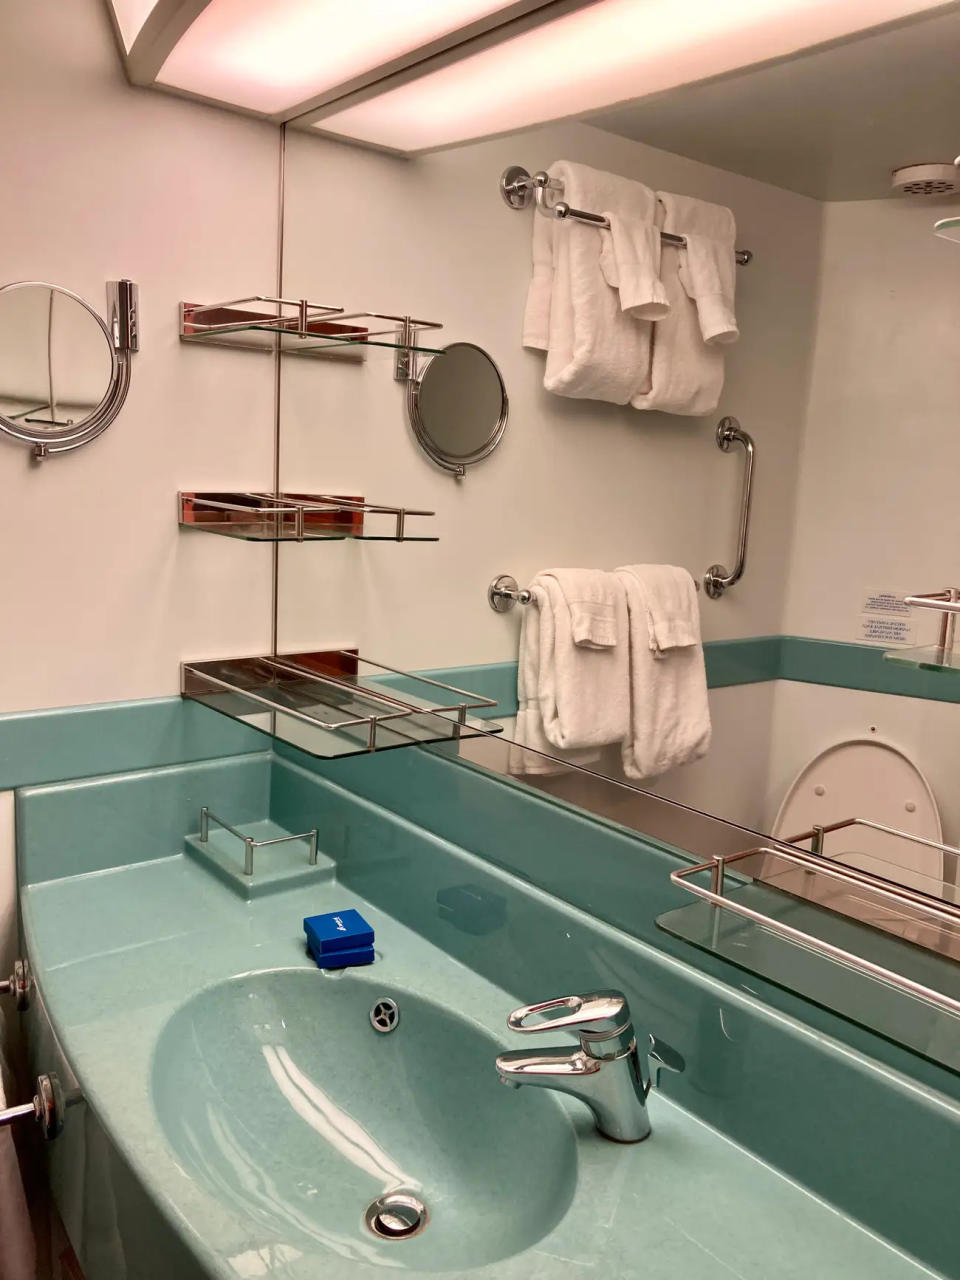 Obwohl meine Kinder eine Kabine mit Meerblick hatten, sah ihr hier abgebildetes Badezimmer genauso aus wie das in unserer Kabine.  - Copyright: Lisa Gallek